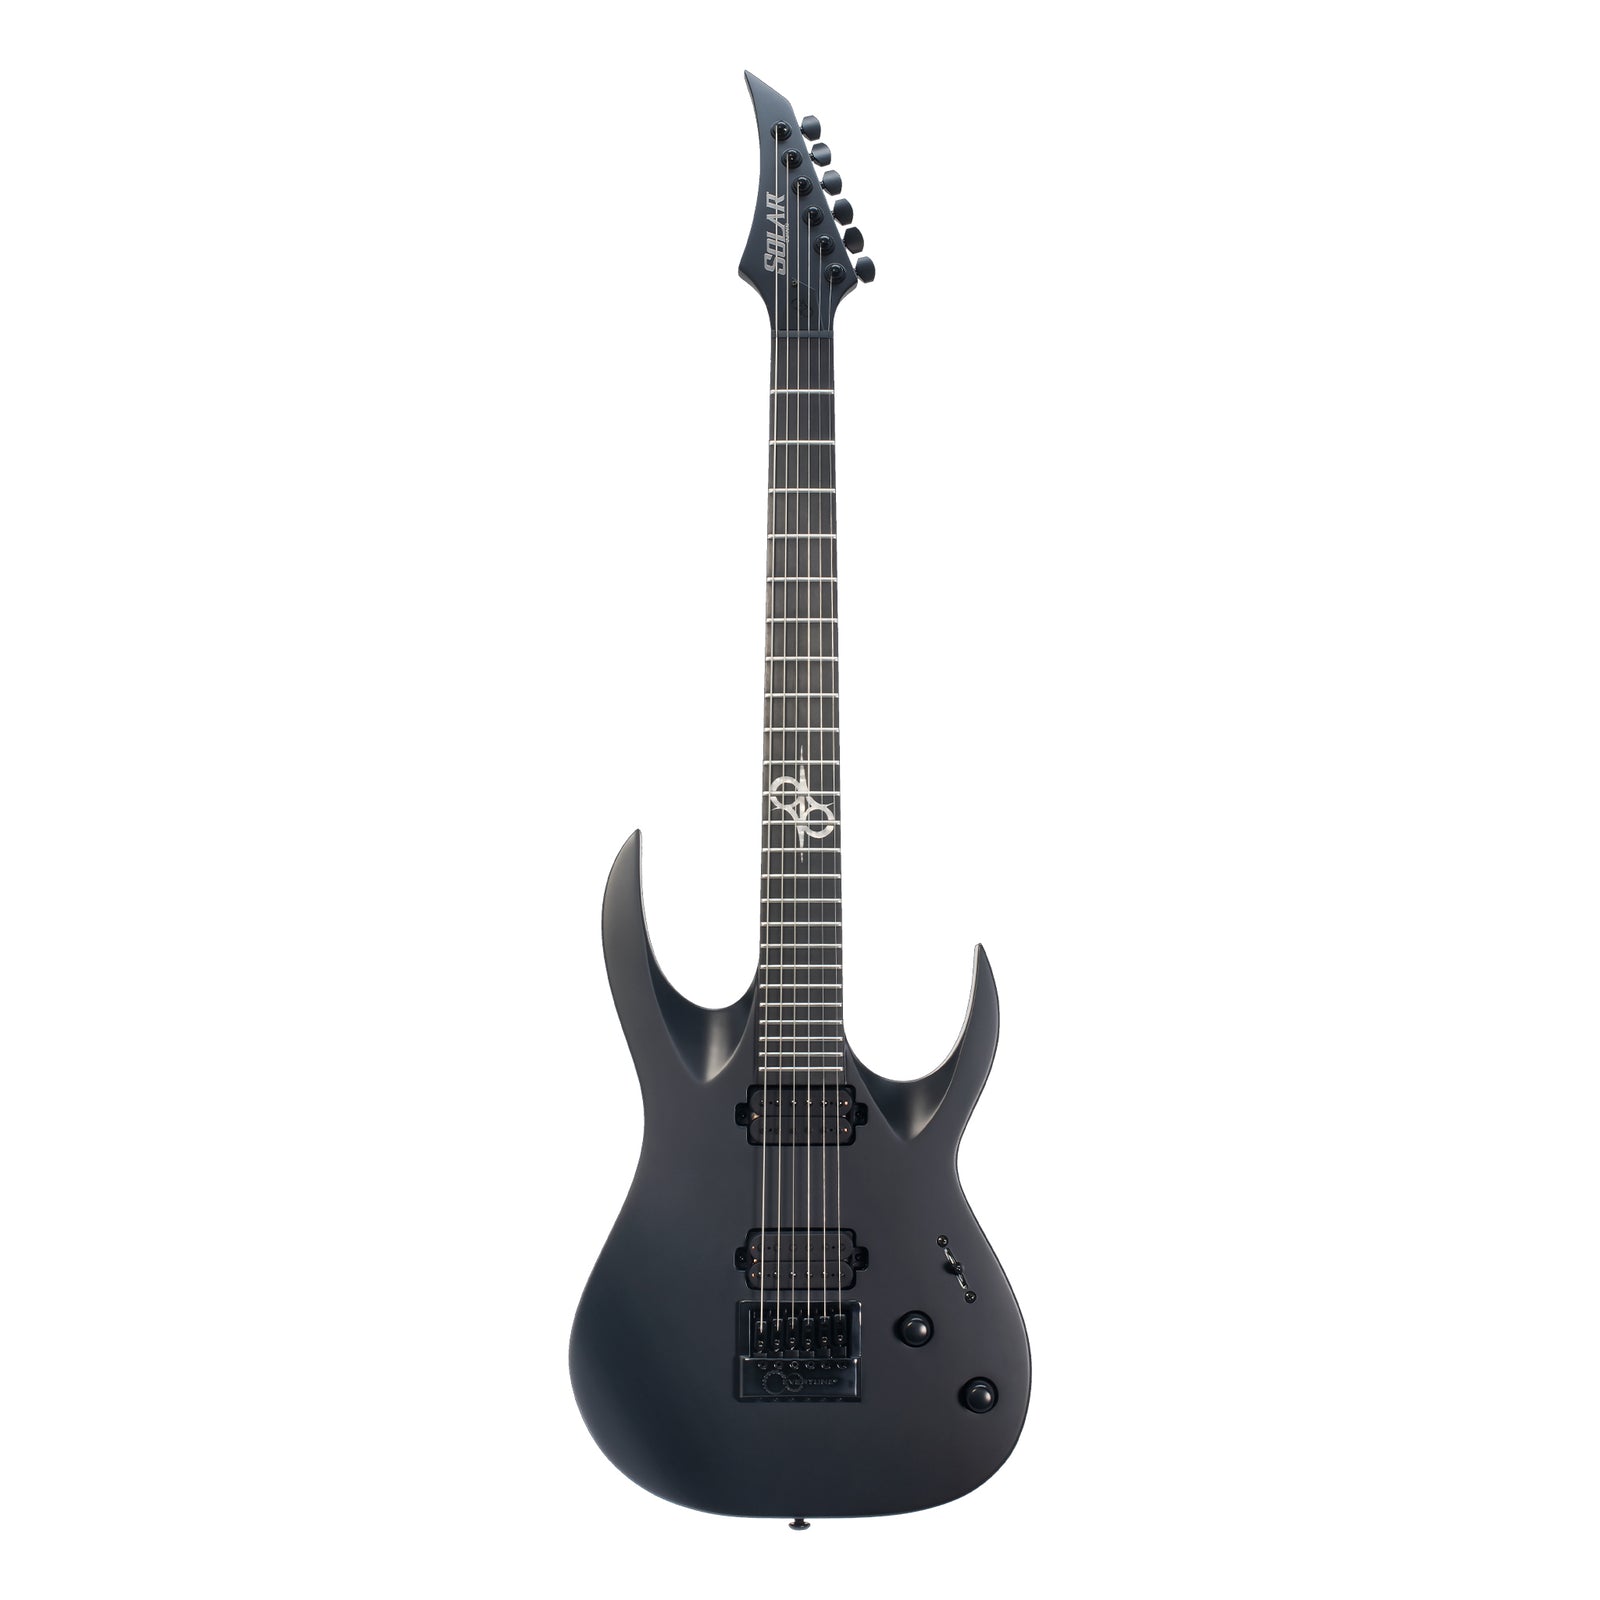 SOLAR A1.6C Electric Guitar - Carbon Black Matte